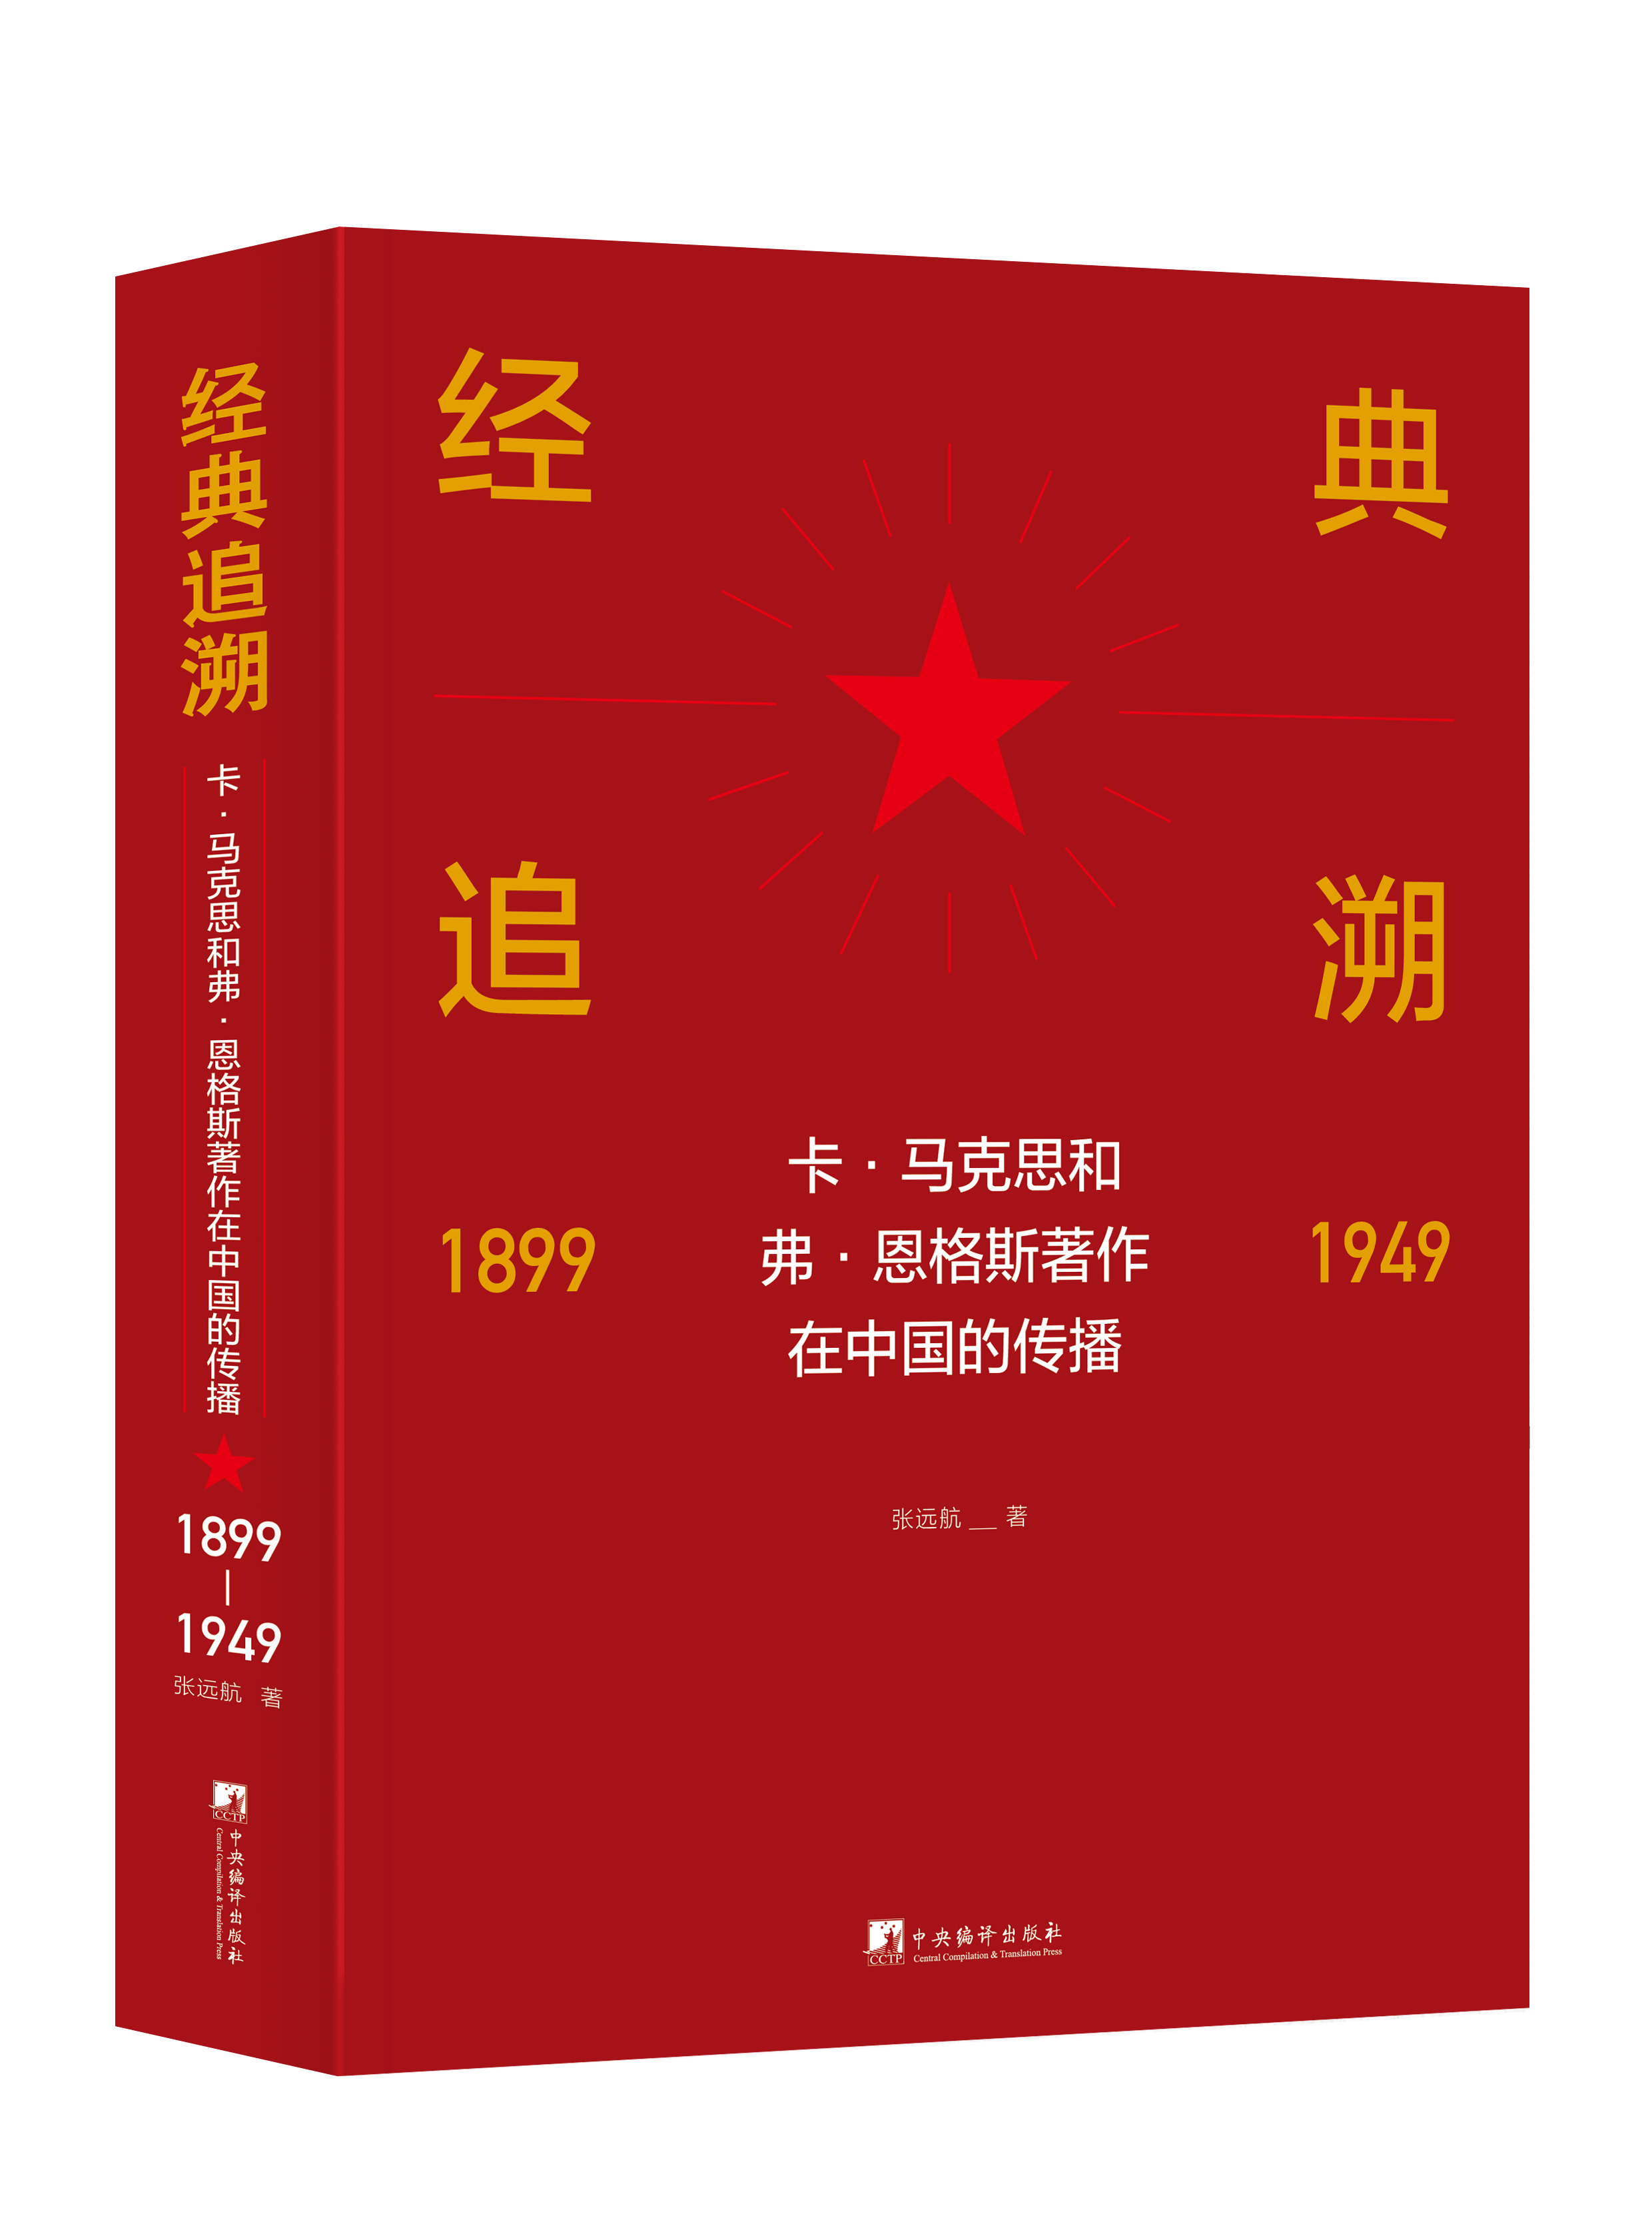 《經典追溯——卡·馬克思和弗·恩格斯著作在中國的傳播（1899-1949）》